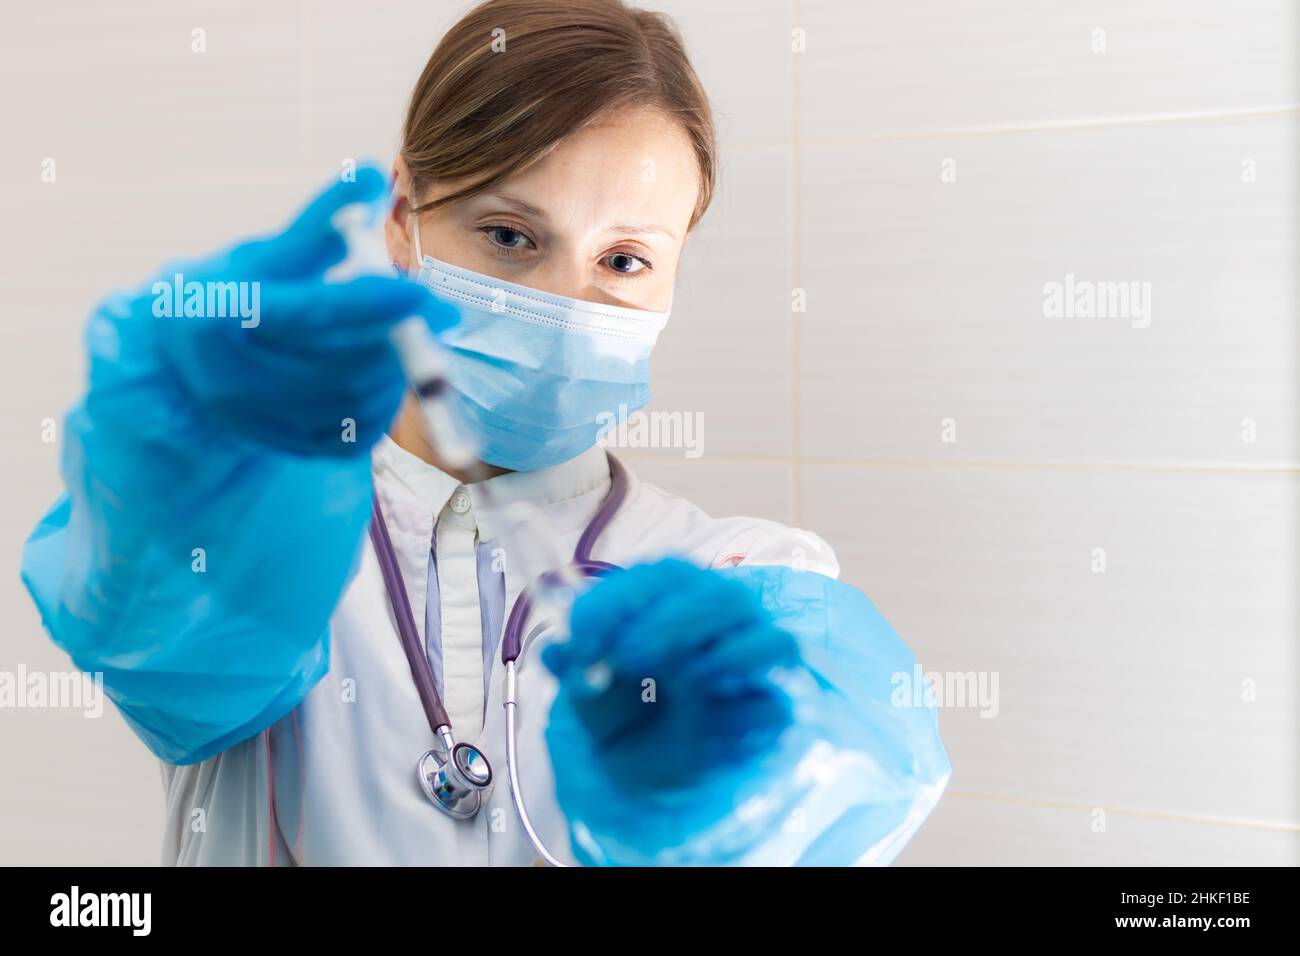 Junge Ärztin in einer medizinischen Maske und Handschuhen mit einer Spritze in der Hand und einem Stethoskop in einem Krankenhaus während einer Coronavirus-Pandemie. Selektive Stockfoto